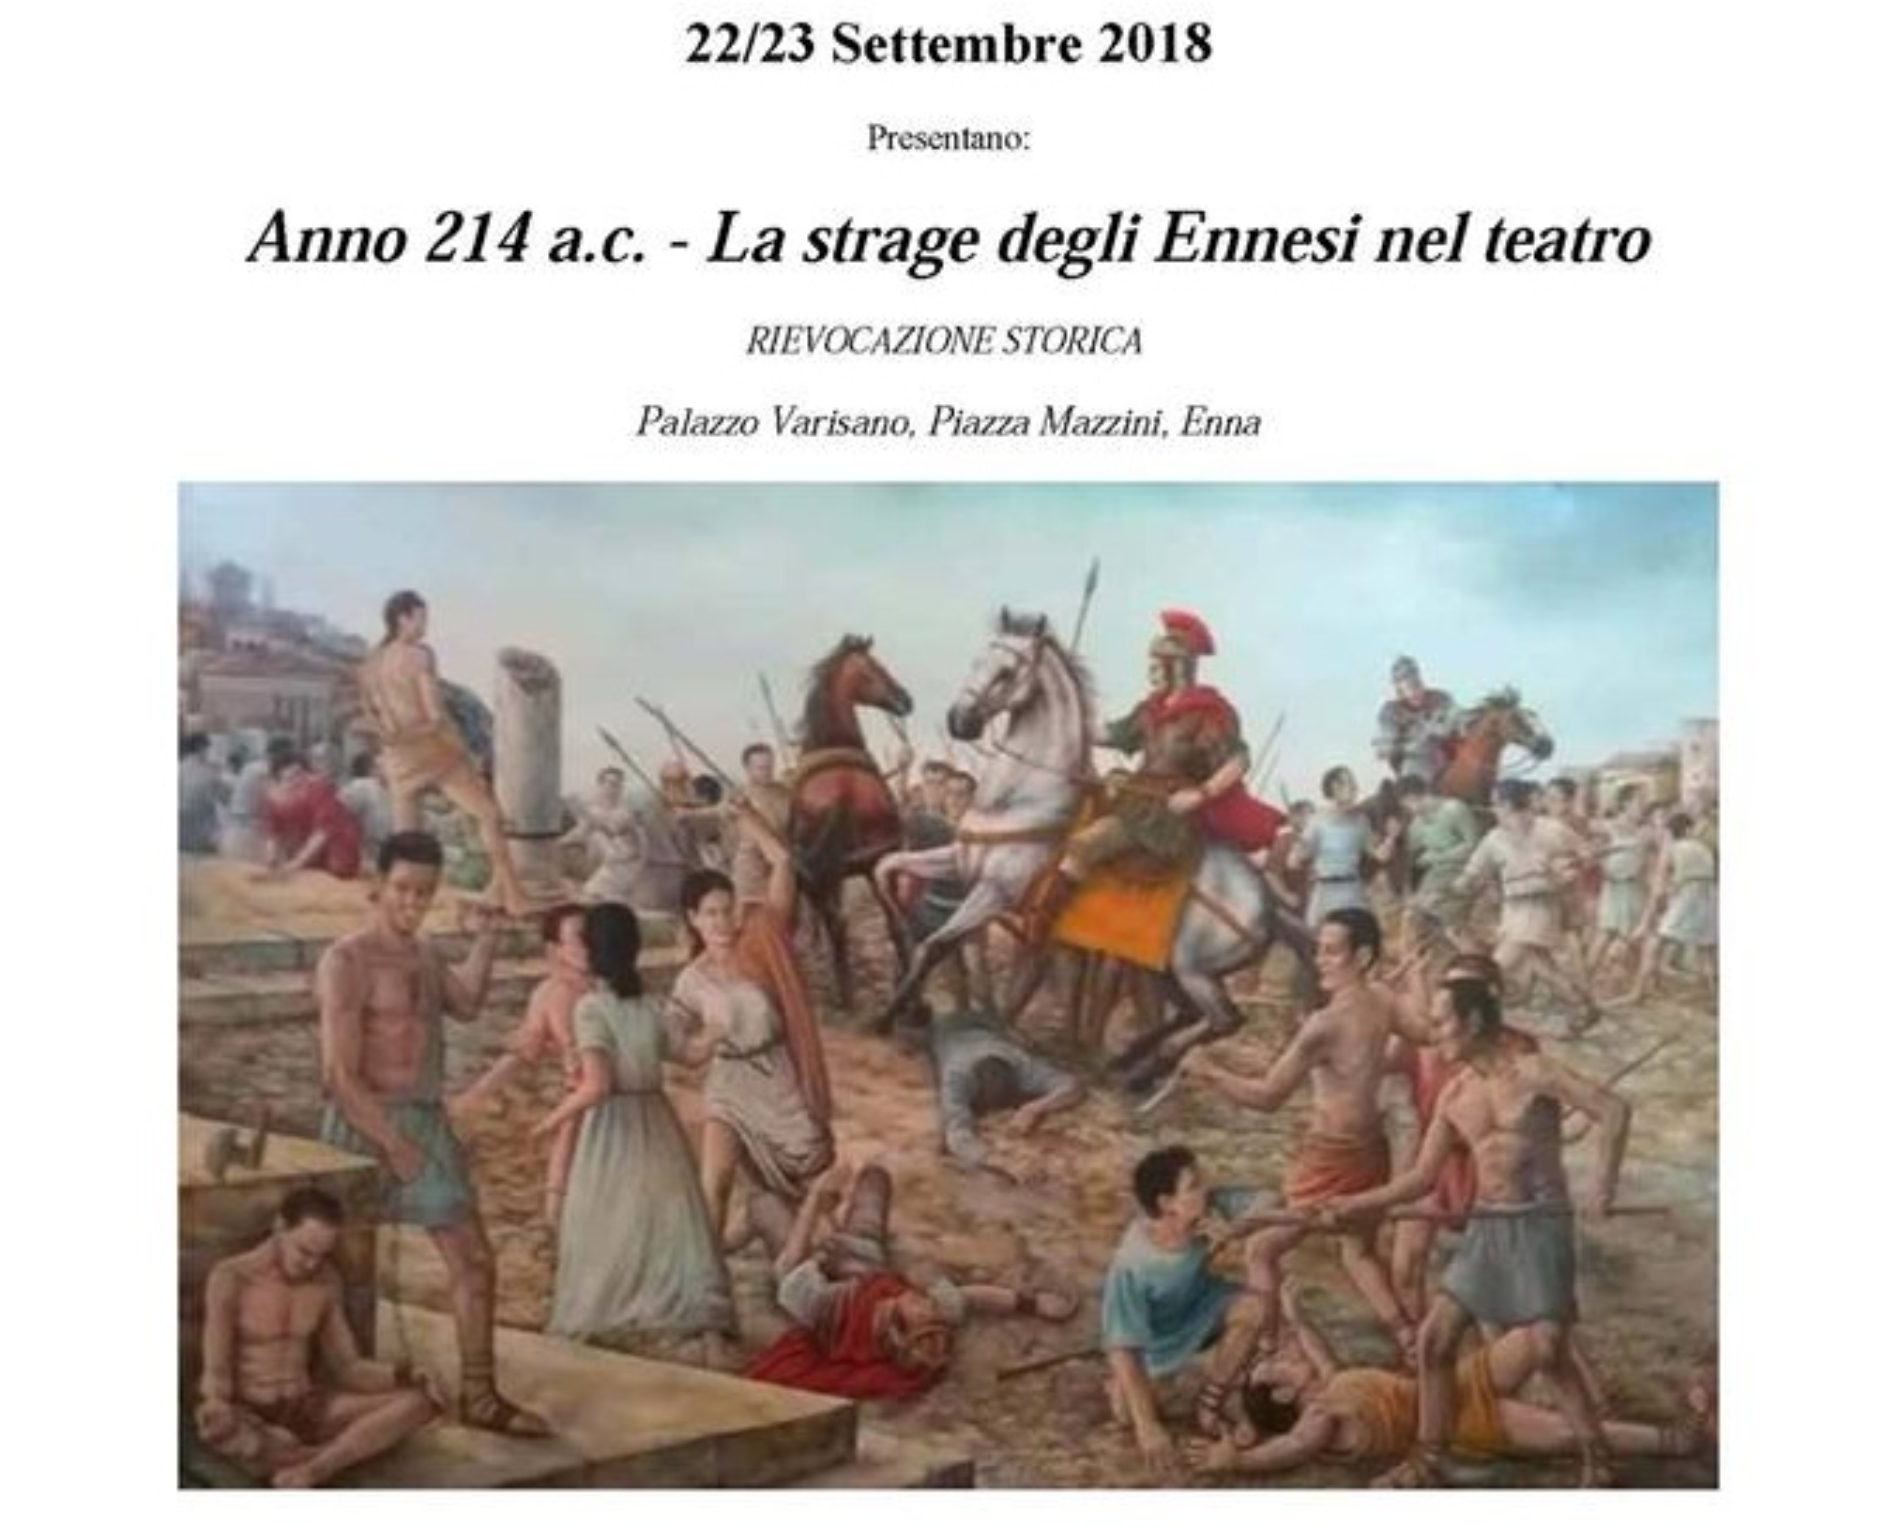 Rievocazione storica: “Anno 214 a.c.- La strage degli Ennesi nel teatro”  Palazzo Varisano  Enna